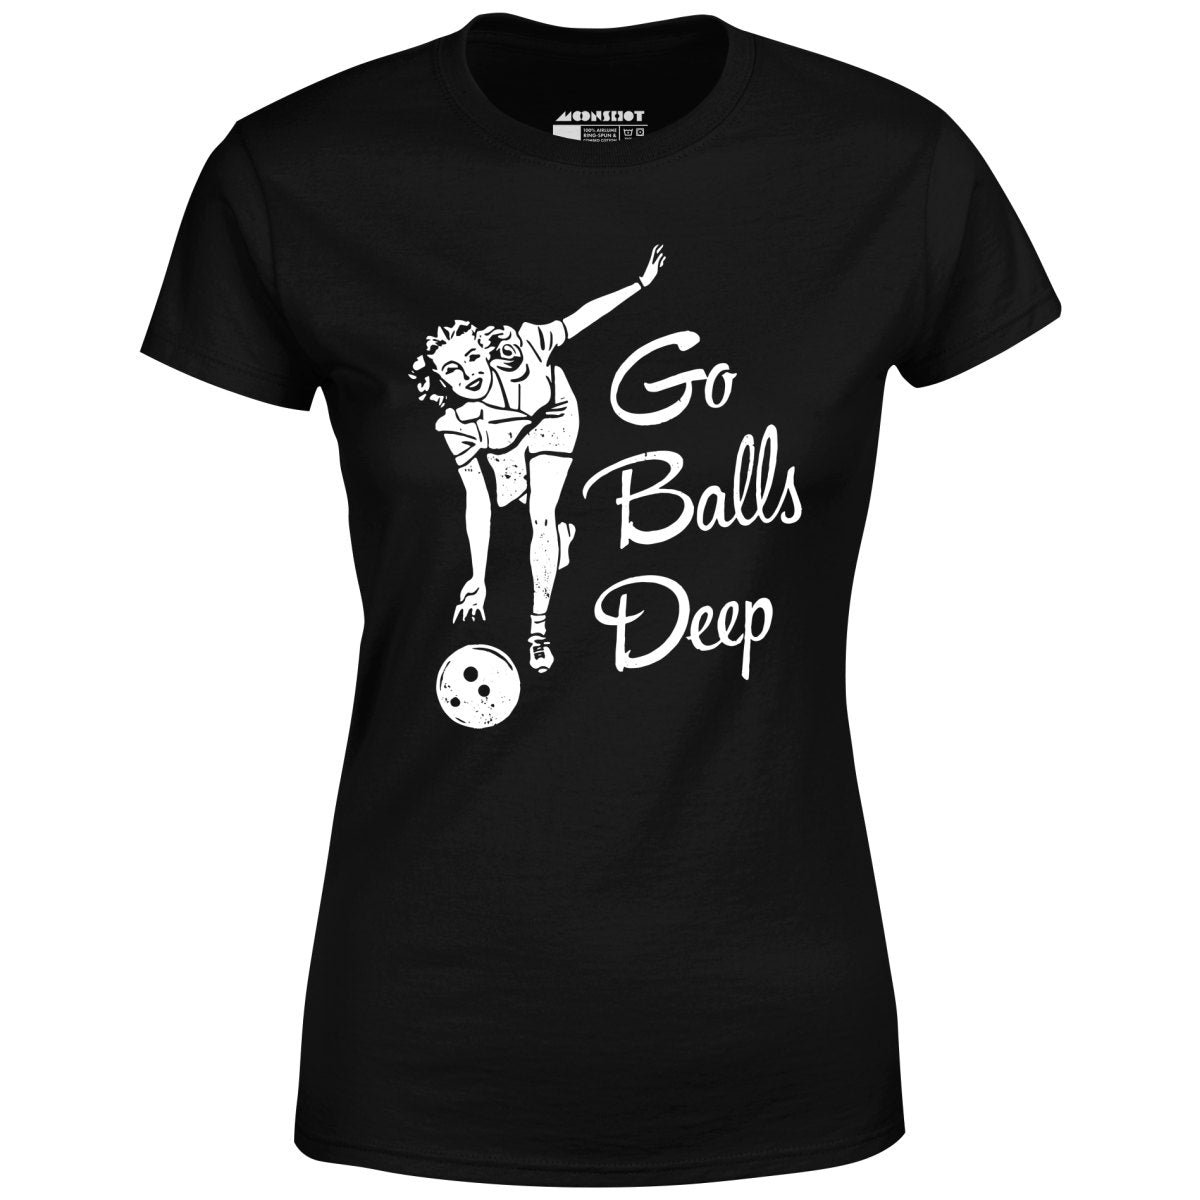 Go Balls Deep - Women's T-Shirt